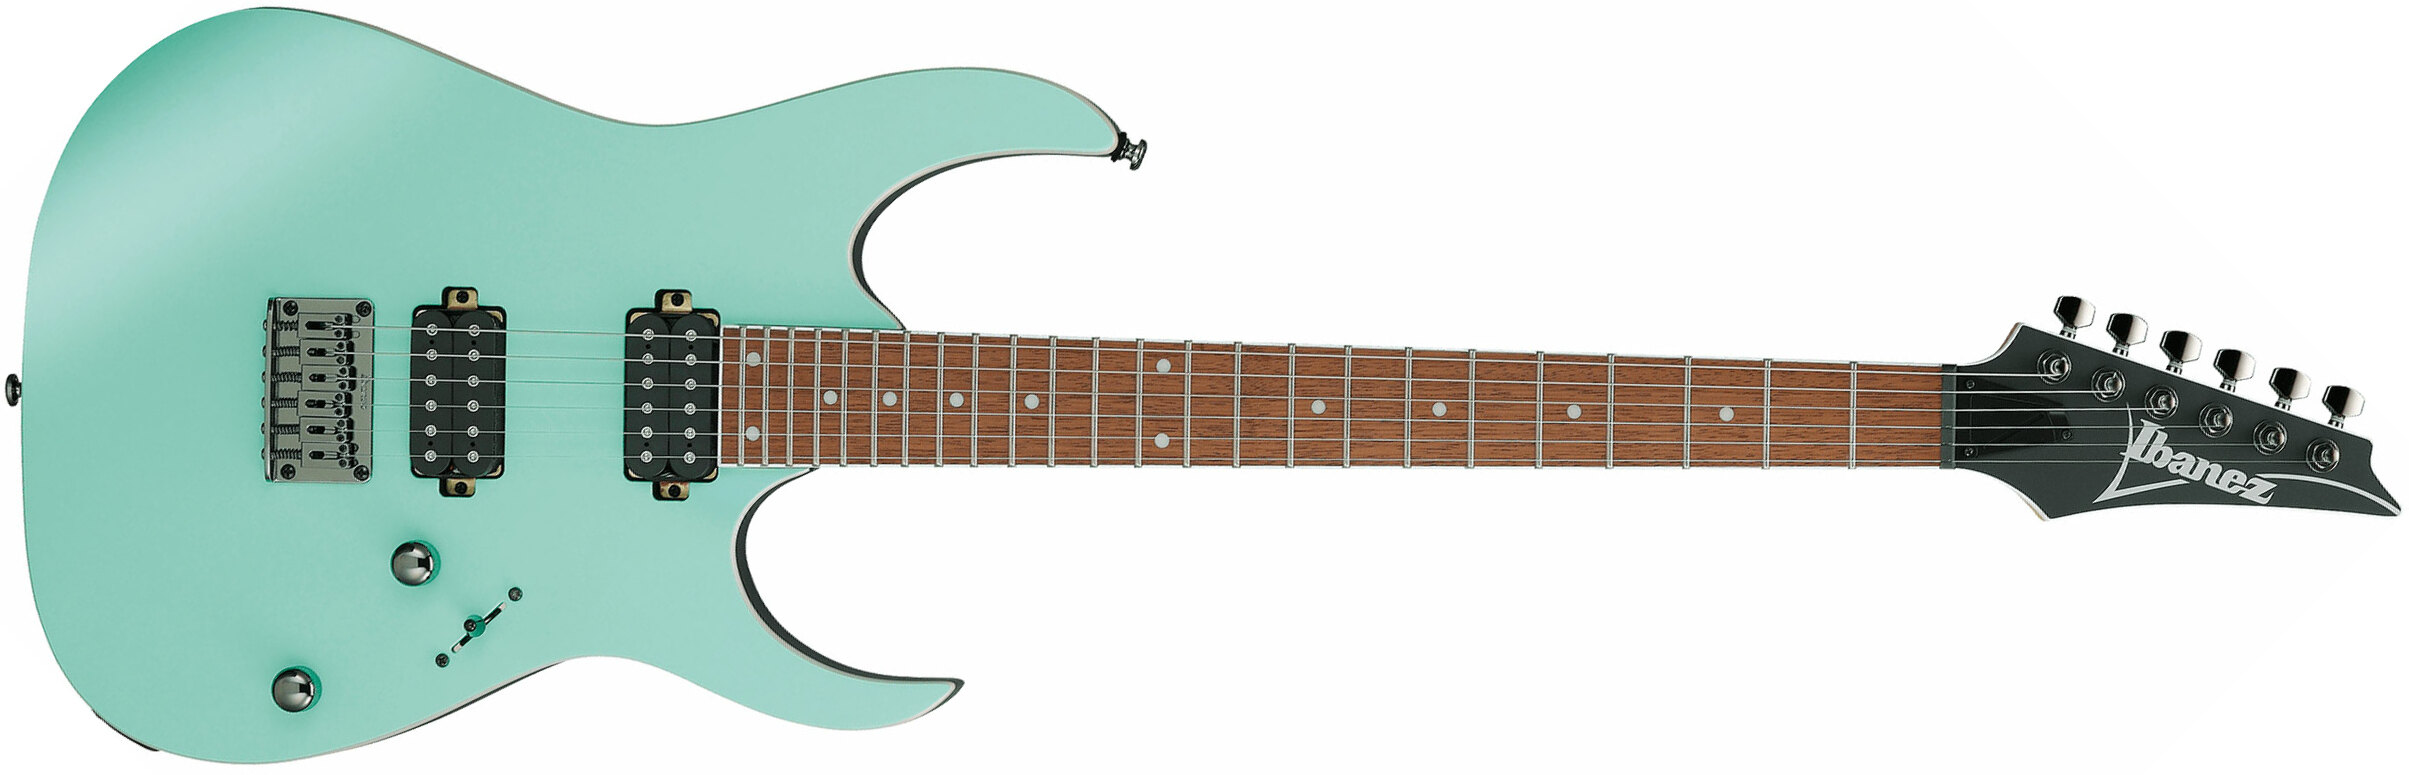 Ibanez Rg421s Sem Standard 2h Ht Ja - Sea Shore Matte - Str shape electric guitar - Main picture